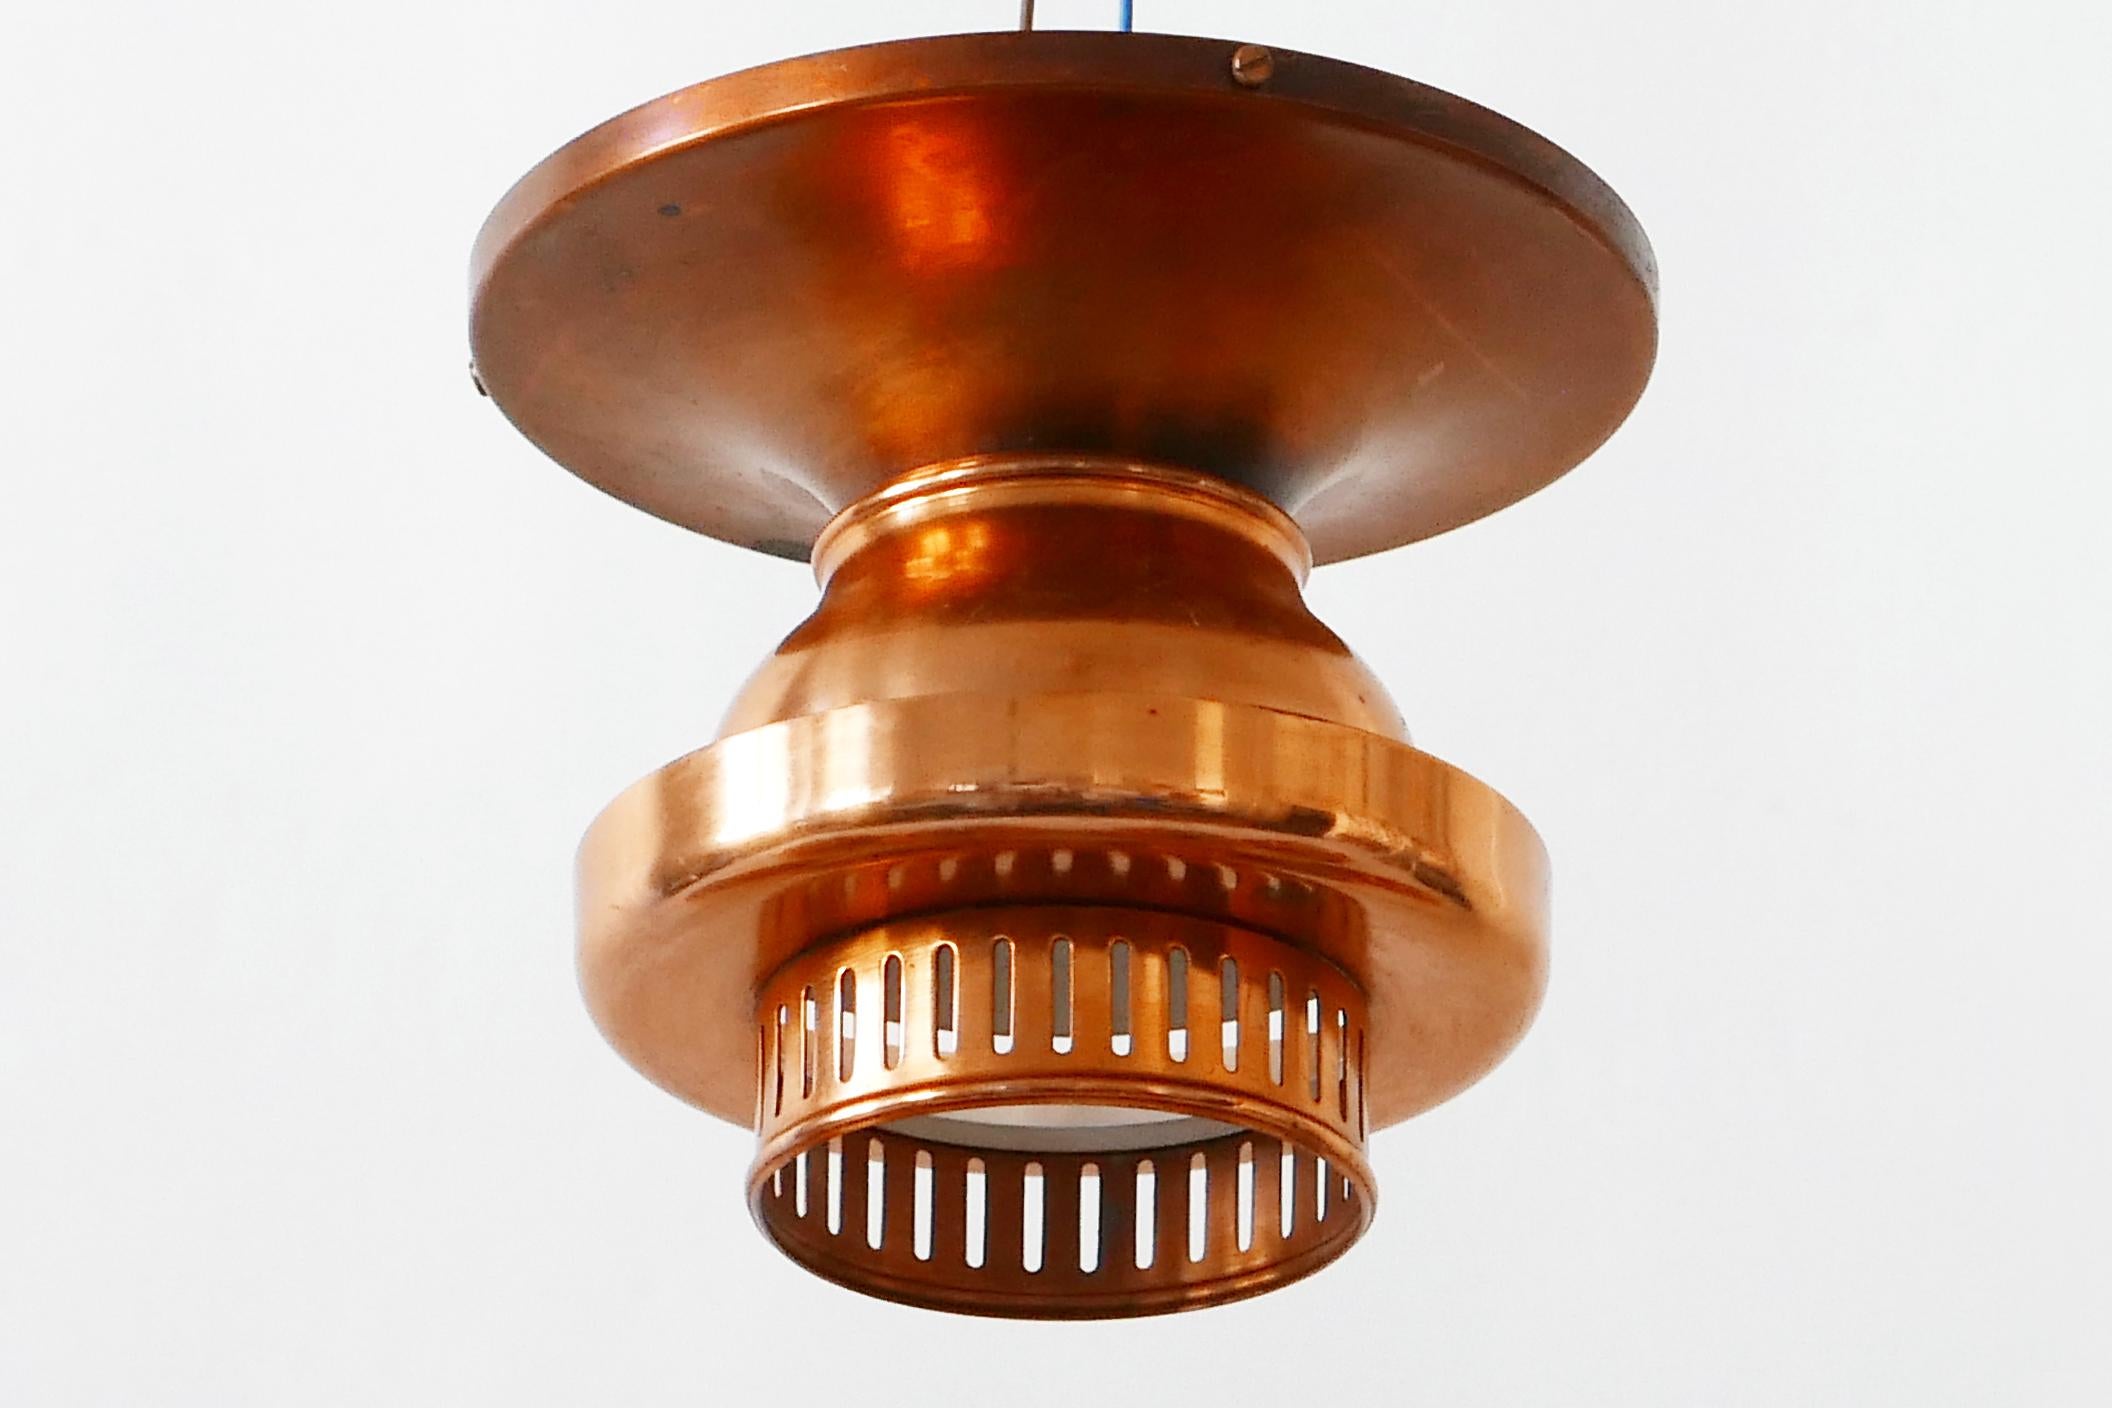 Elegant Mid-Century Modern Copper Ceiling Lamps or Flush Mounts, 1960s, Denmark For Sale 2